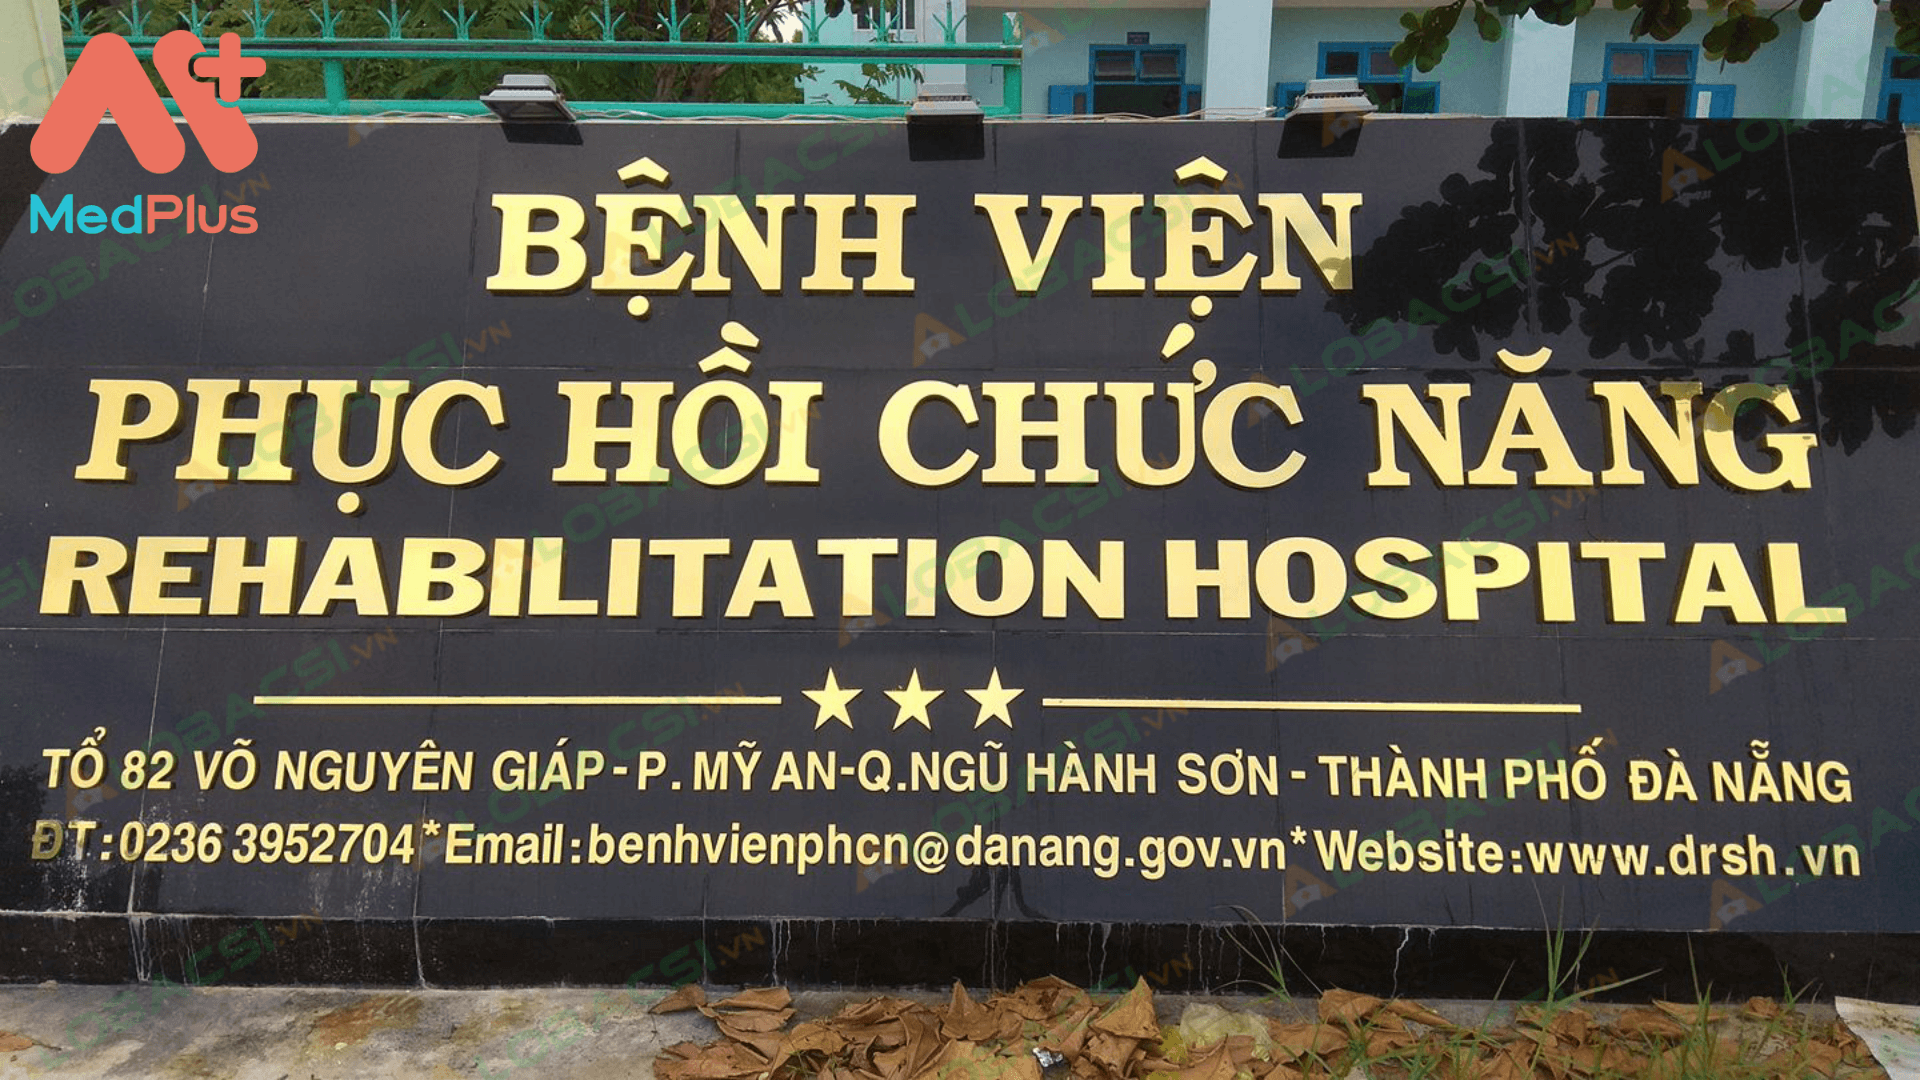 Bệnh viện phục hồi chức năng Đà Nẵng